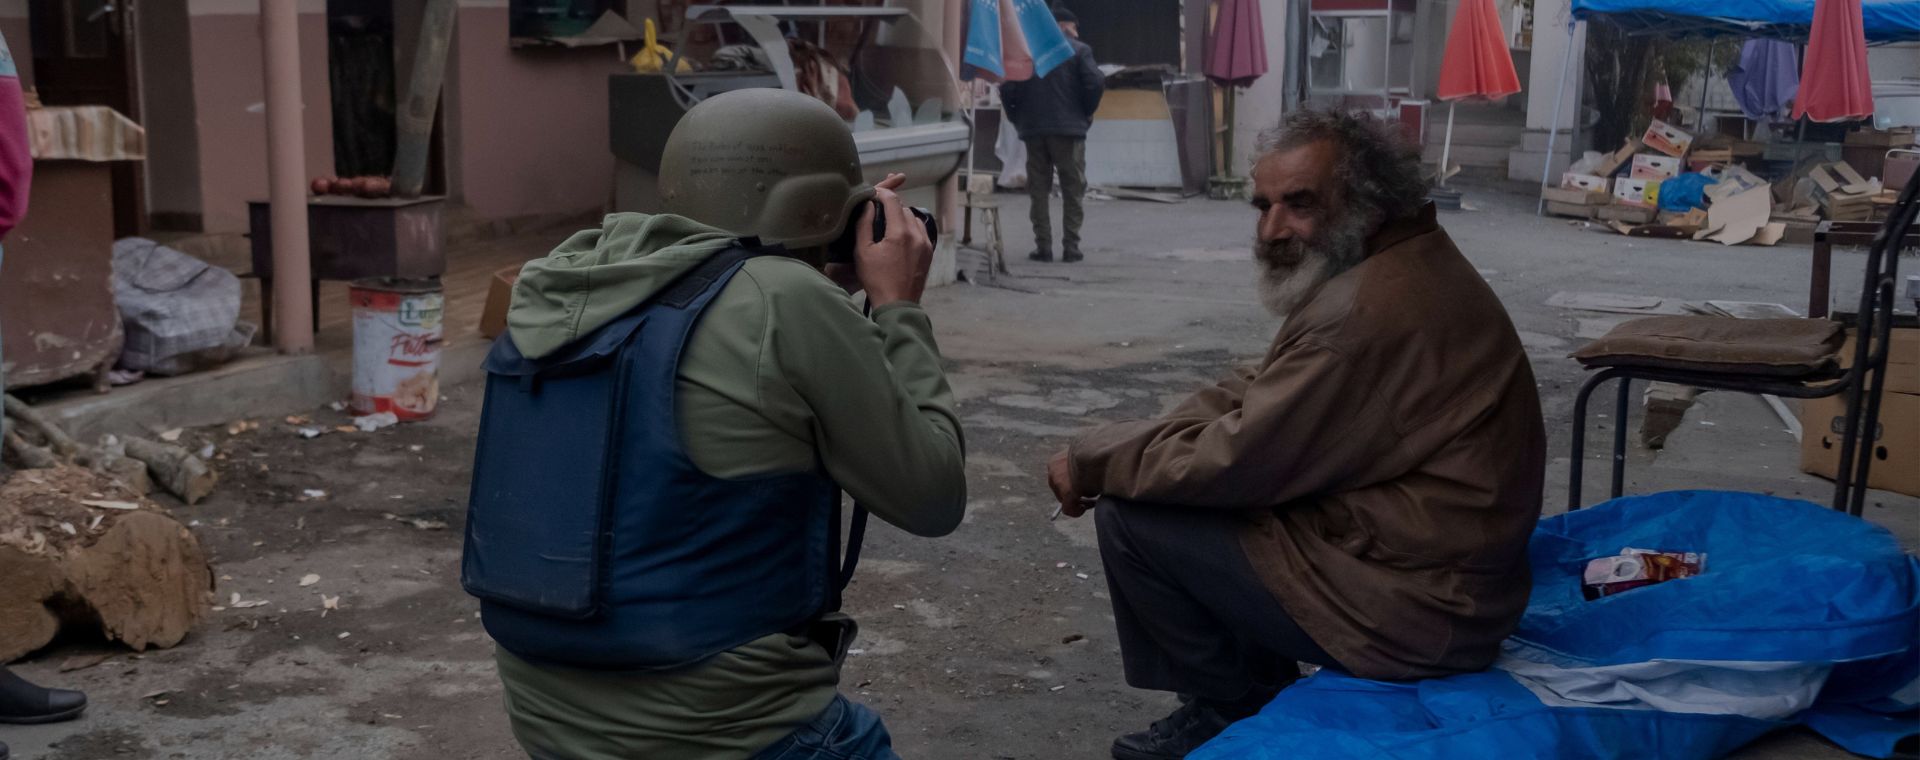 Ein Fotograf trägt eine schützende Körperpanzerweste und einen Helm und fotografiert einen älteren Einheimischen während eines militärischen Konflikts zwischen armenischen und aserbaidschanischen Kräften auf dem zentralen Markt in Stepanakert.